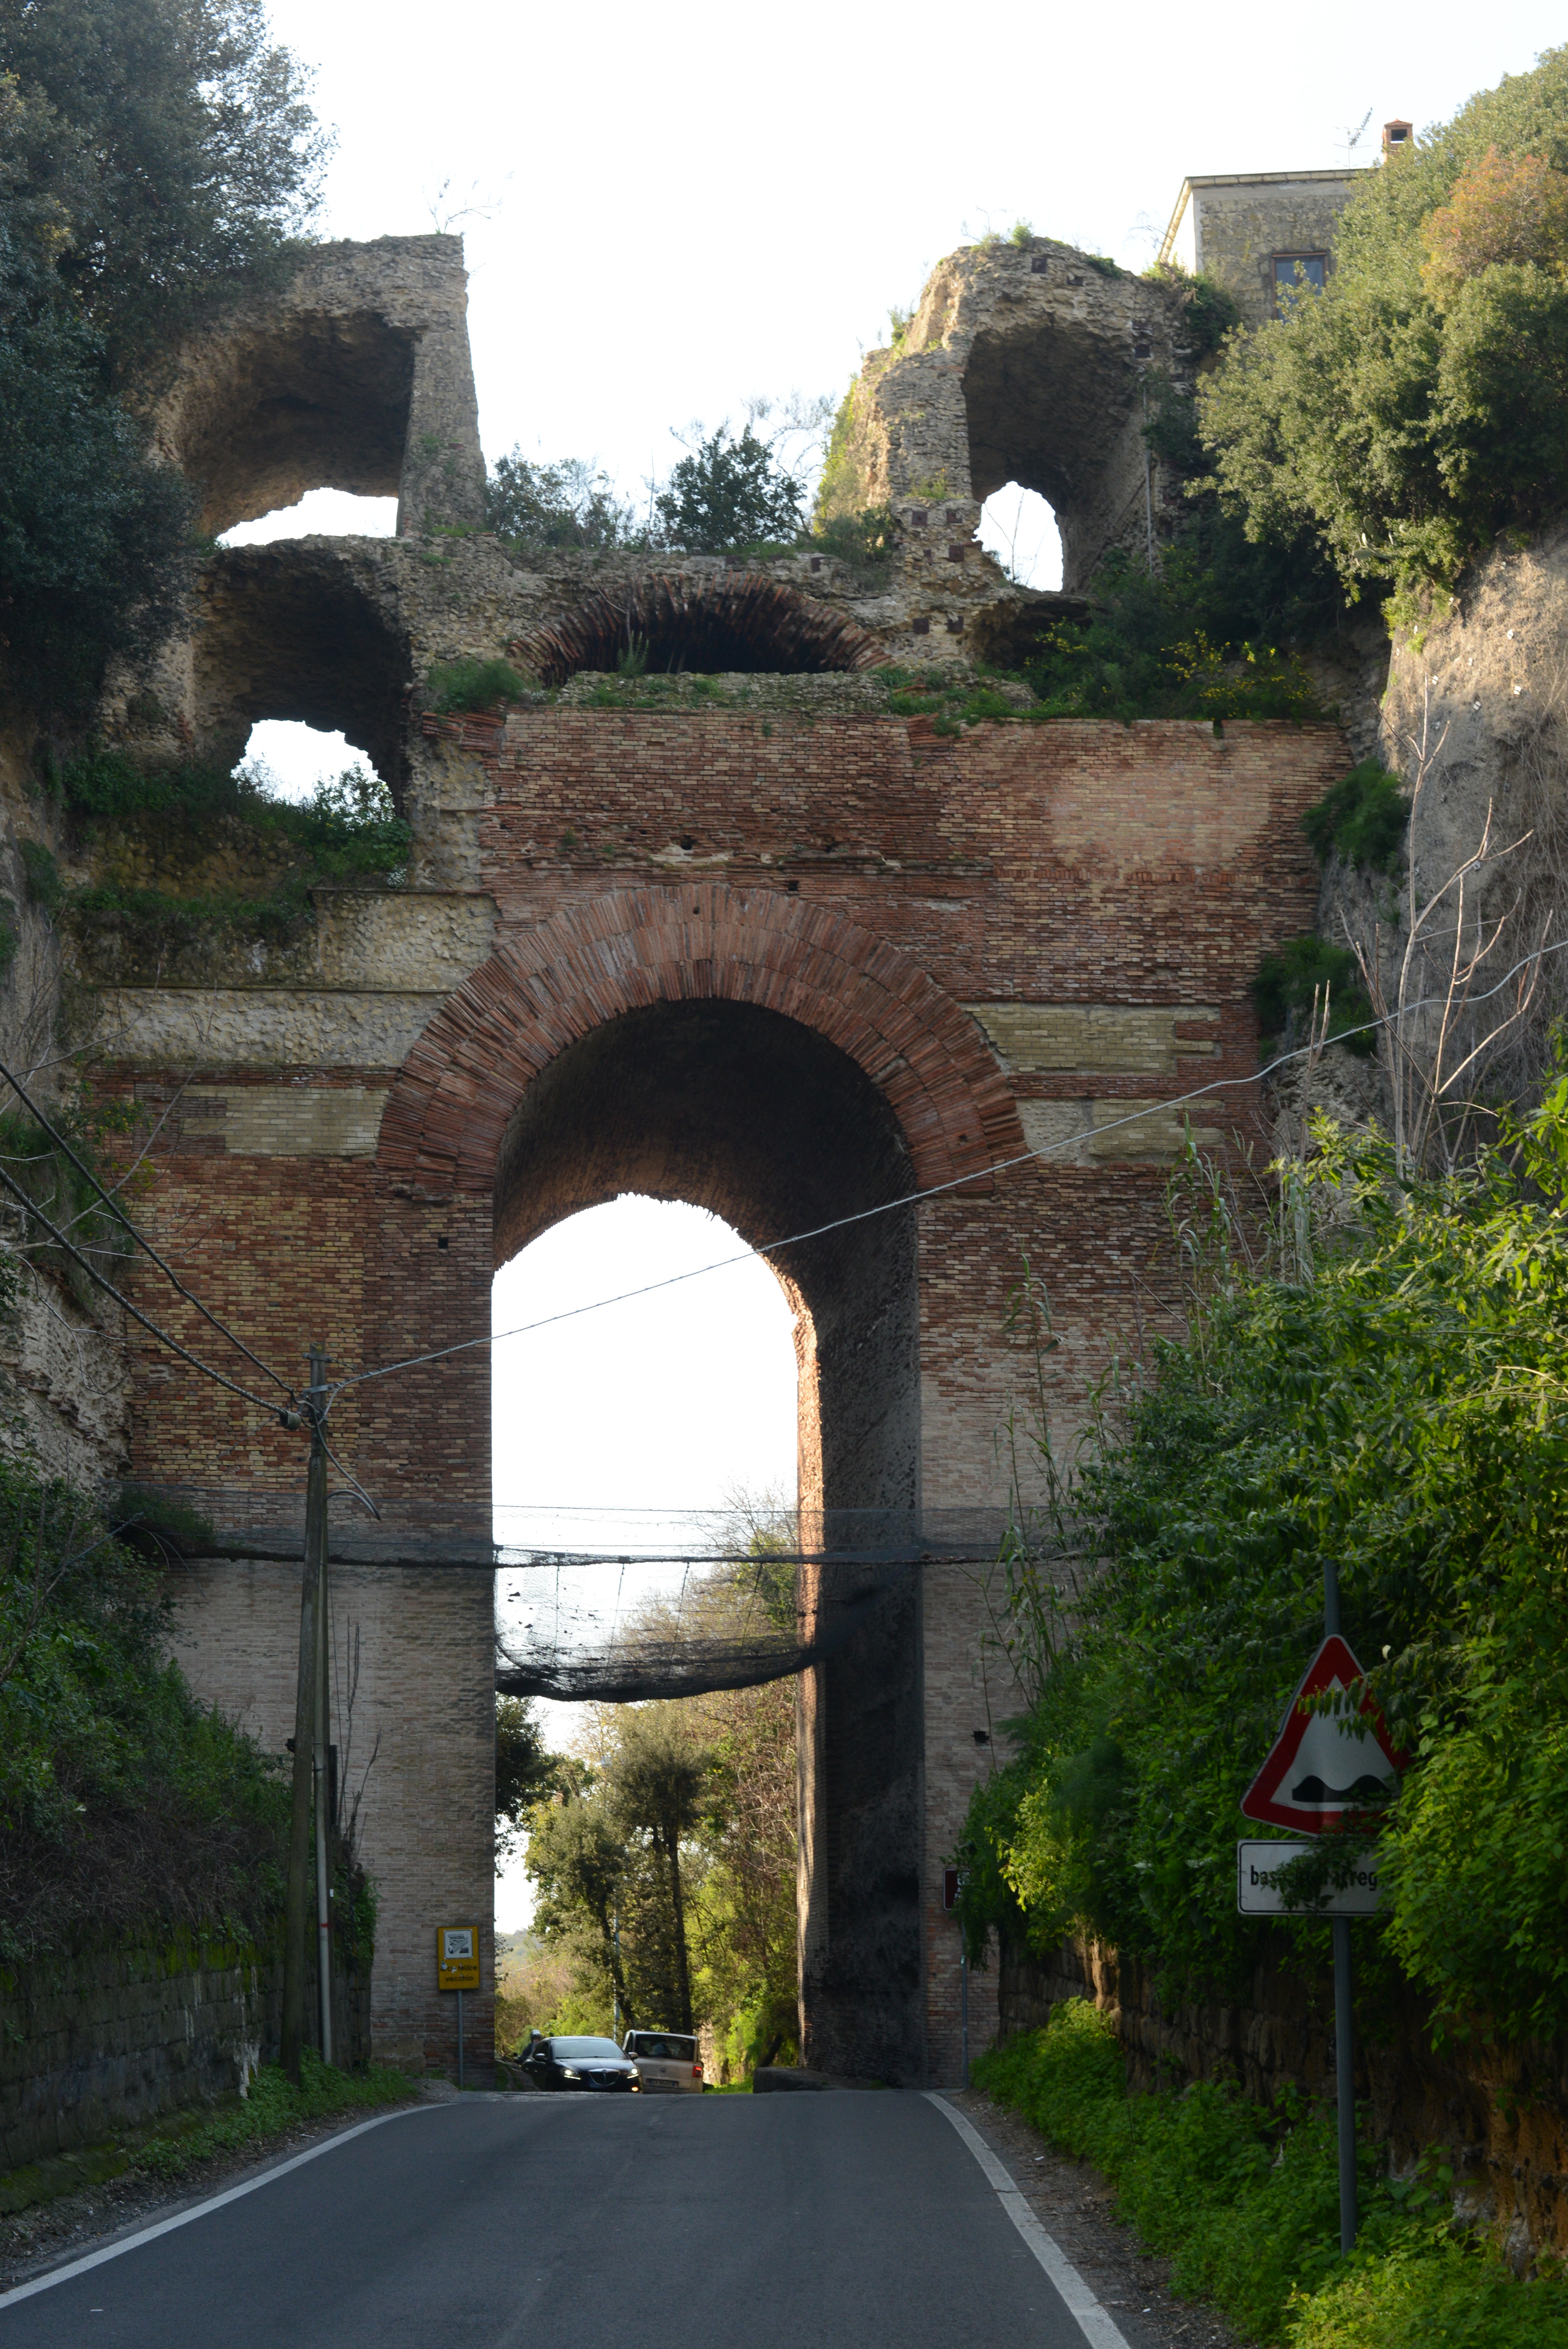 Ruthven, L'Arco Felice romano, Pozzuoli, 2018, fotografia digitale